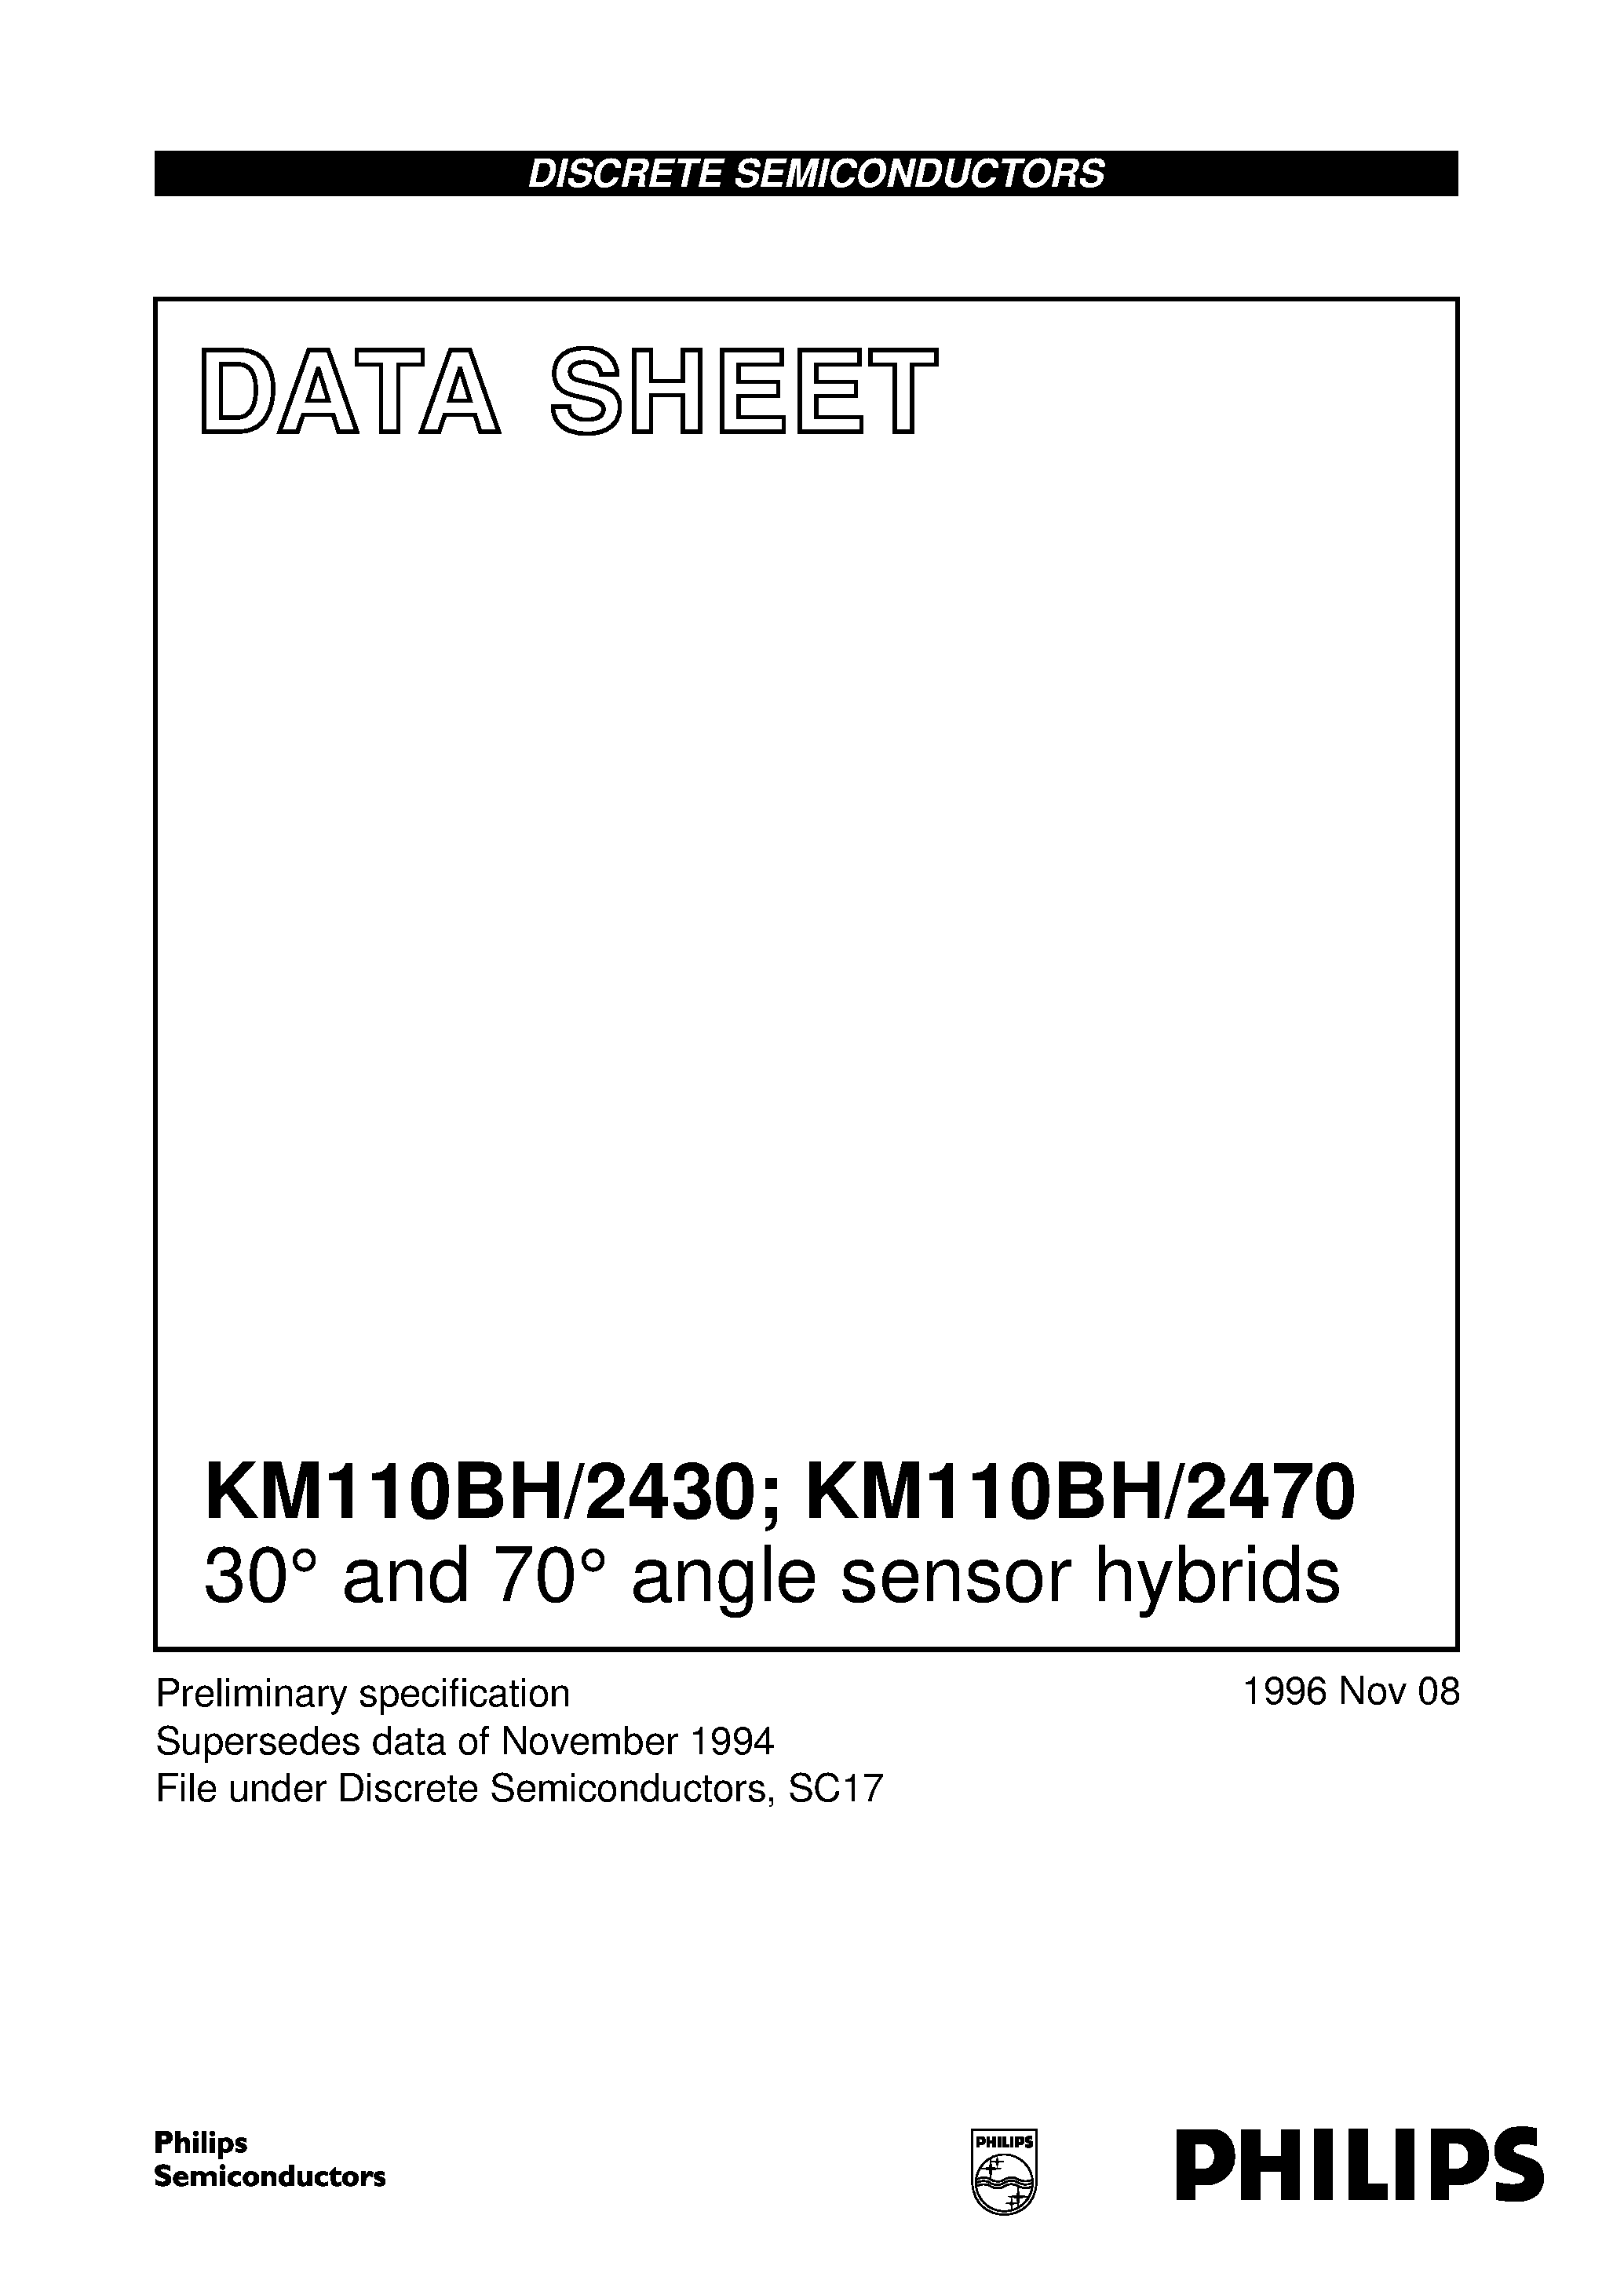 Даташит KM110BH - 30 and 70 angle sensor hybrids страница 1